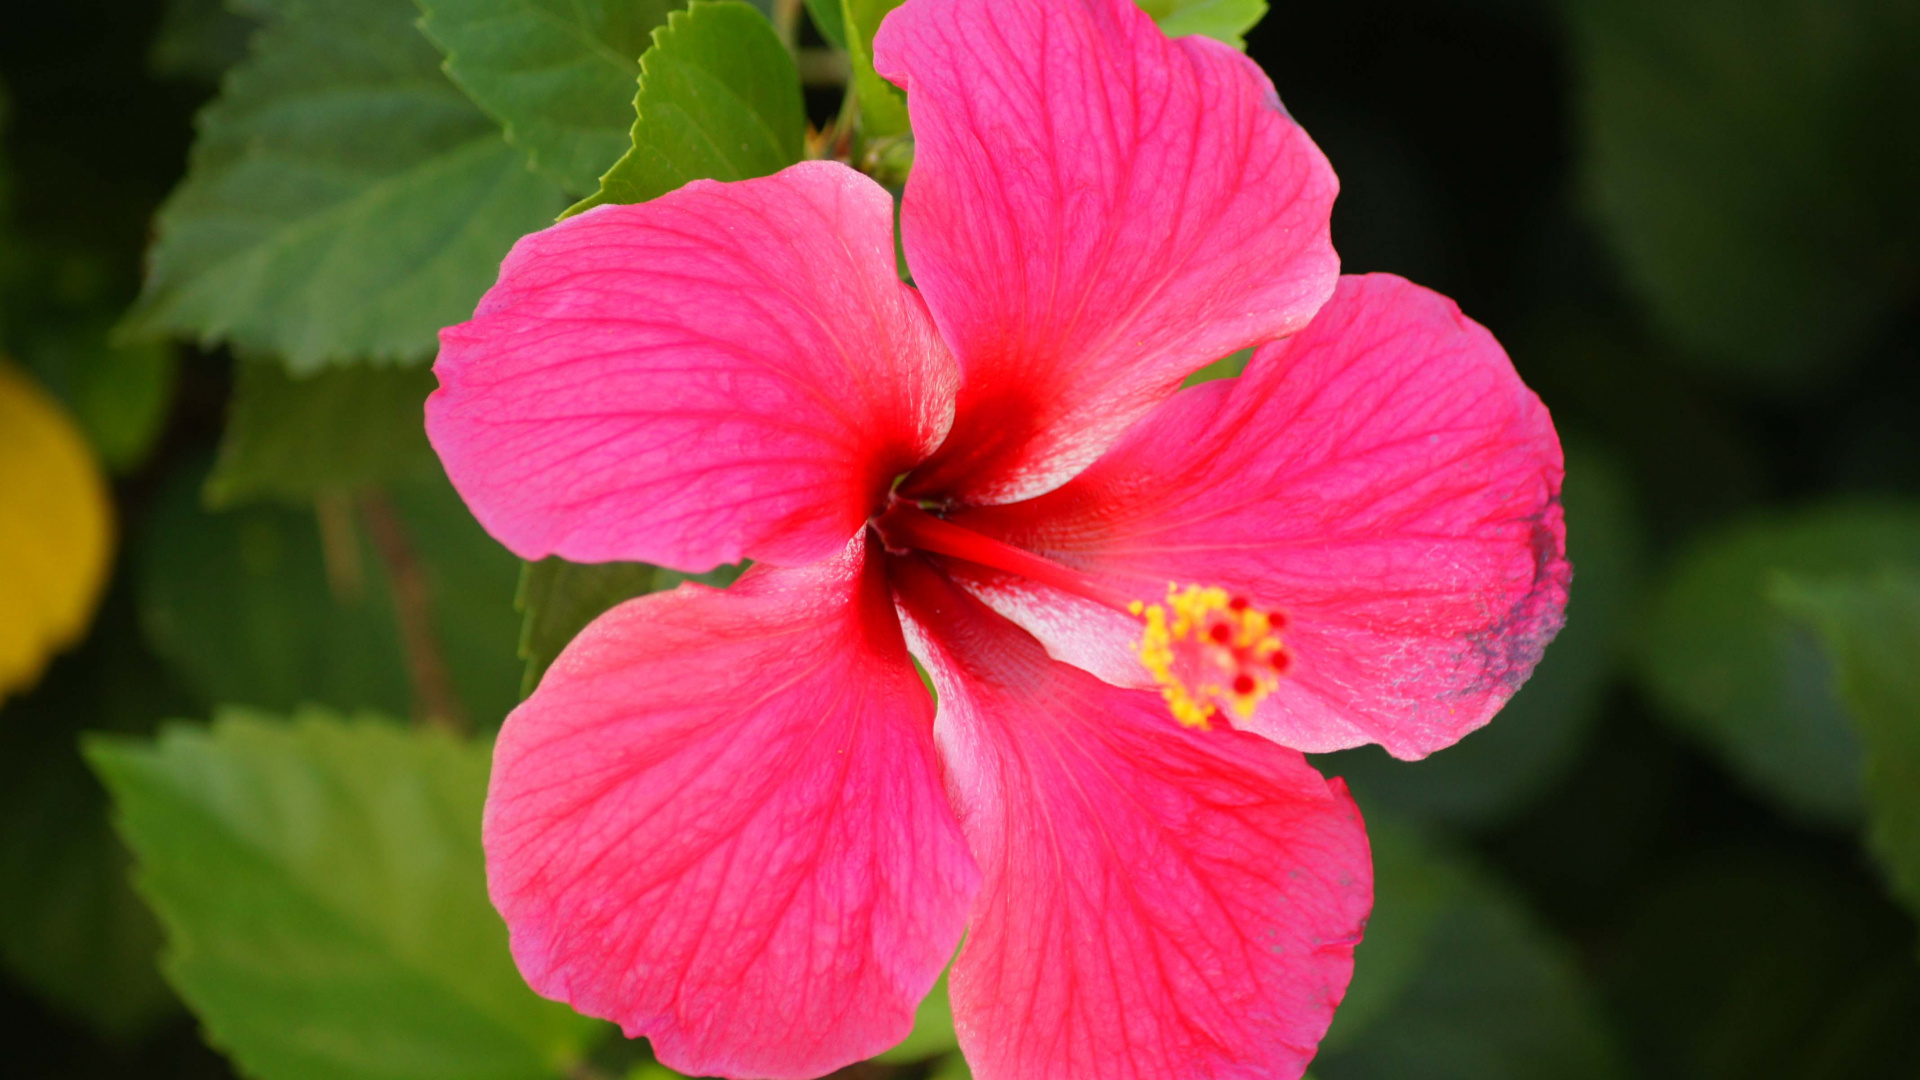 Beautiful flower wallpapers, Flowers in nature, Hawaiian flowers, Rose flower beauty, 1920x1080 Full HD Desktop